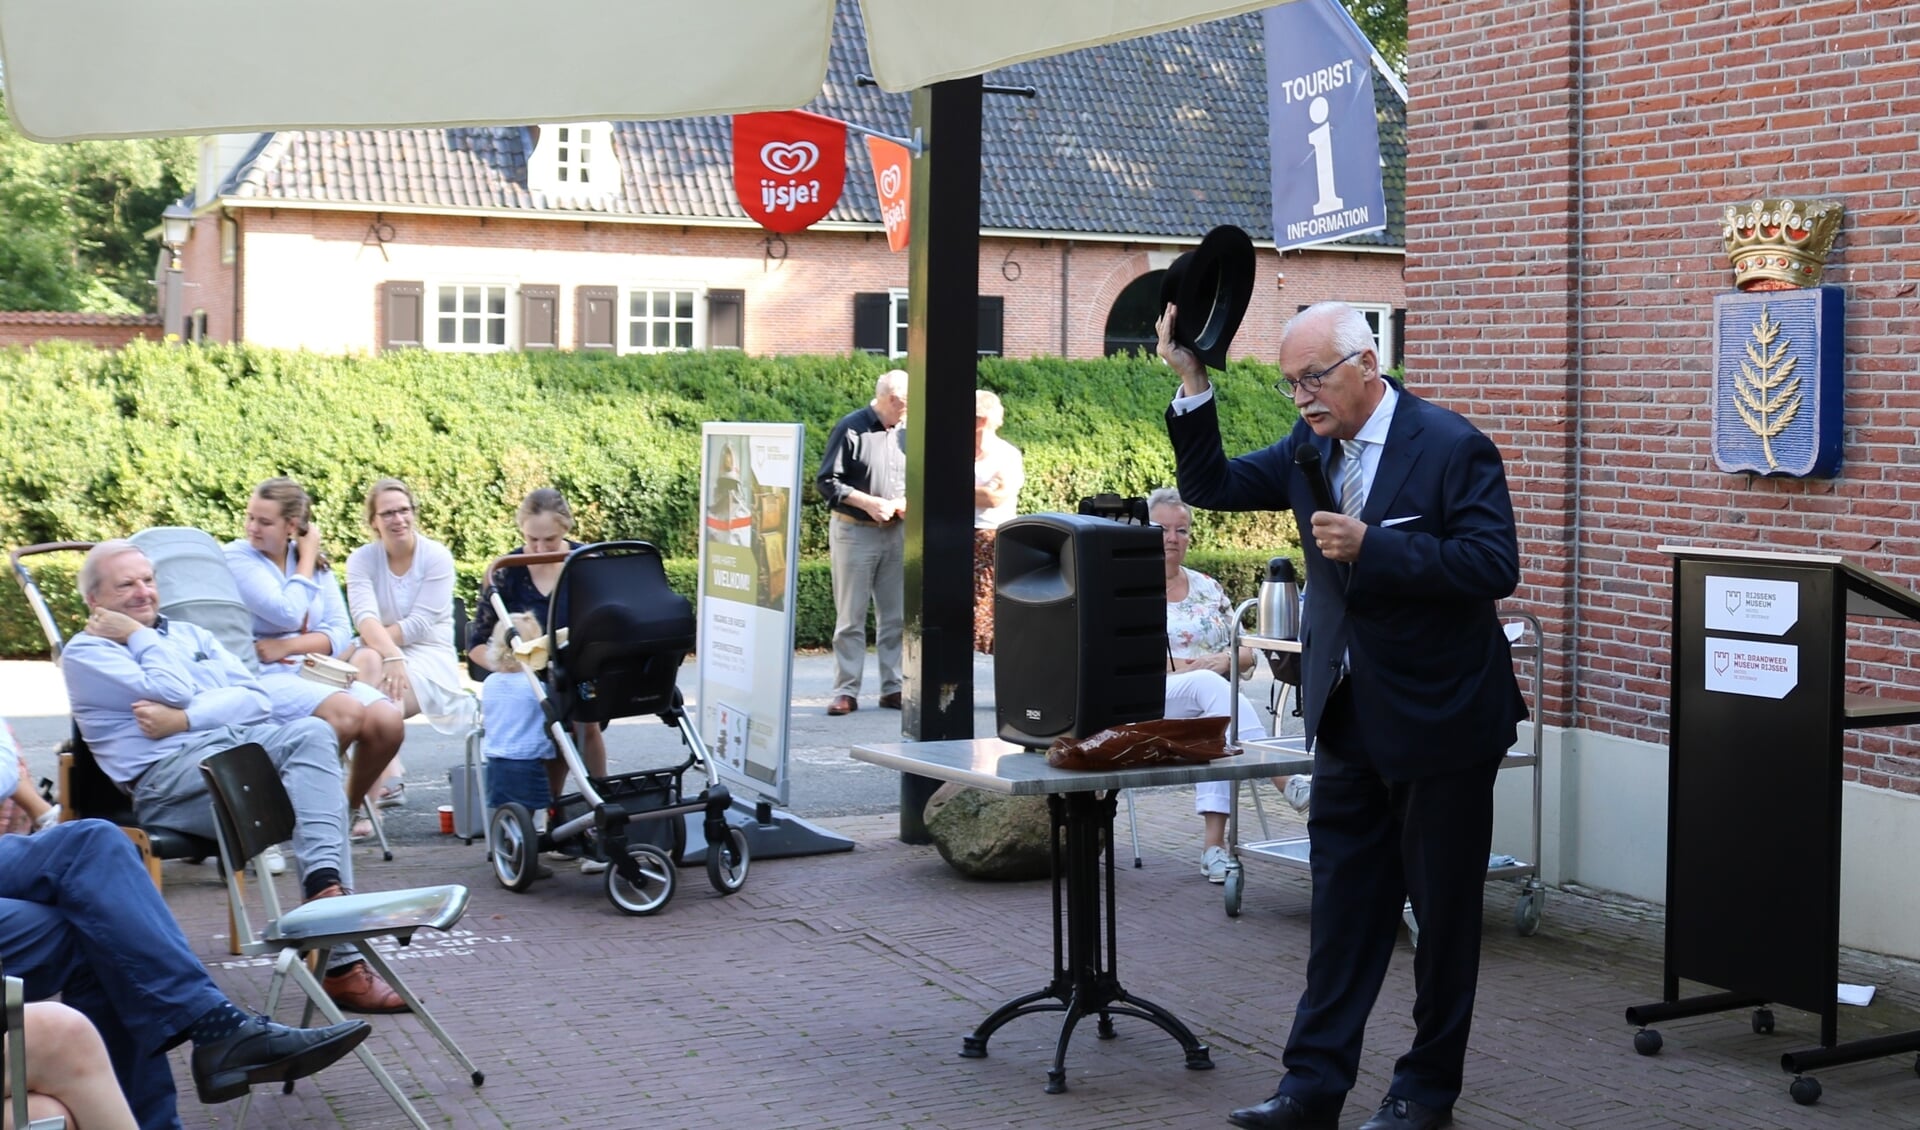 Burgemeester Asje van Dijk van Barneveld opent de expositie Rijssen chapeau!